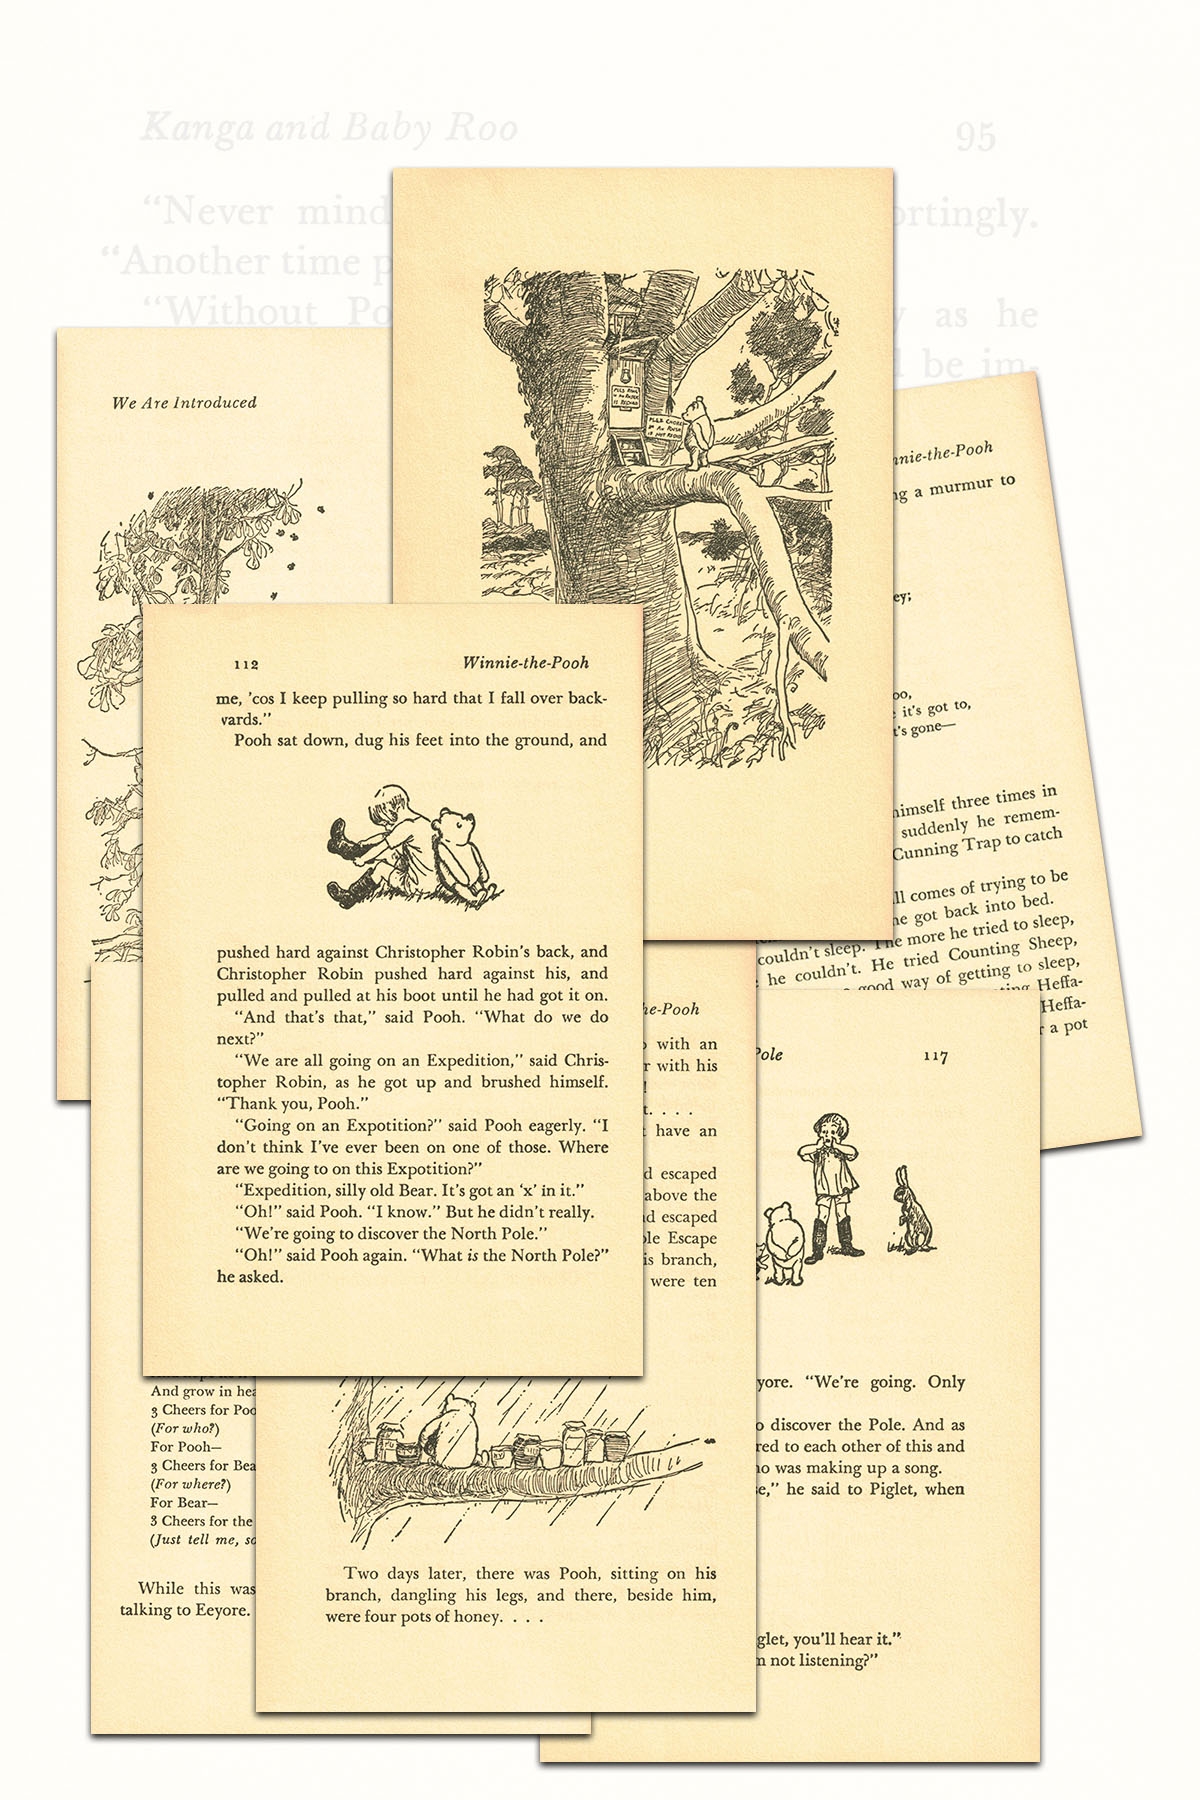 Free Printable Vintage Winnie The Pooh Book Pages Rose Clearfield - Free Printable Book Pages